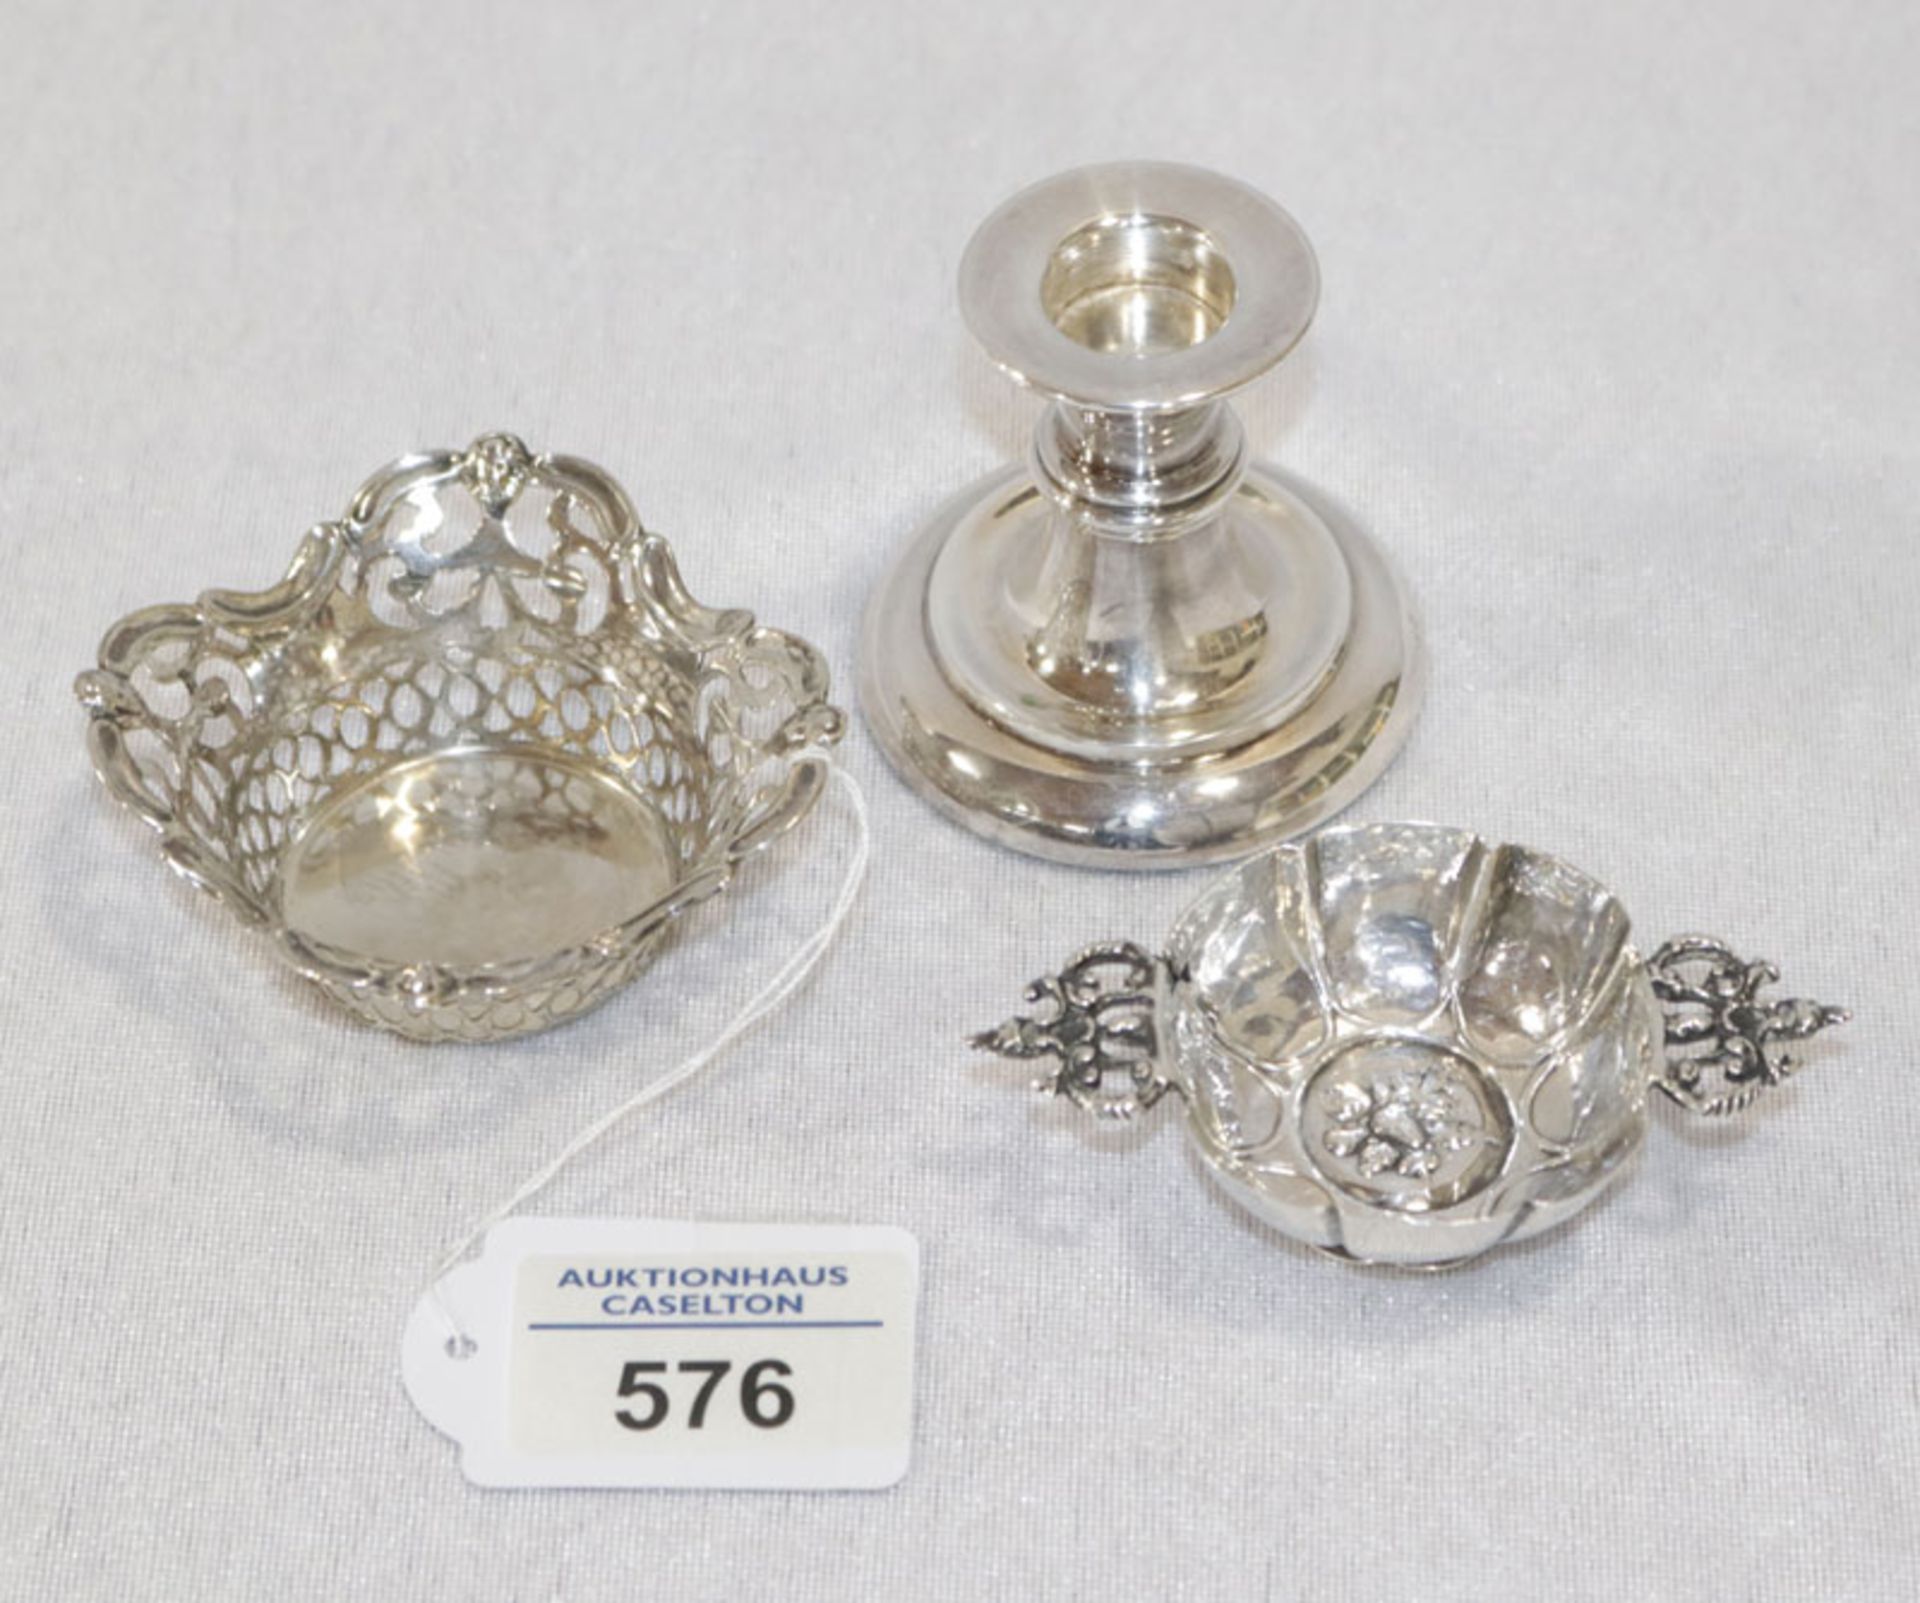 Silber Konvolut, 2 kleine Schälchen und Kerzenleuchter, gefüllt, Gebrauchsspuren, teils beschädigt